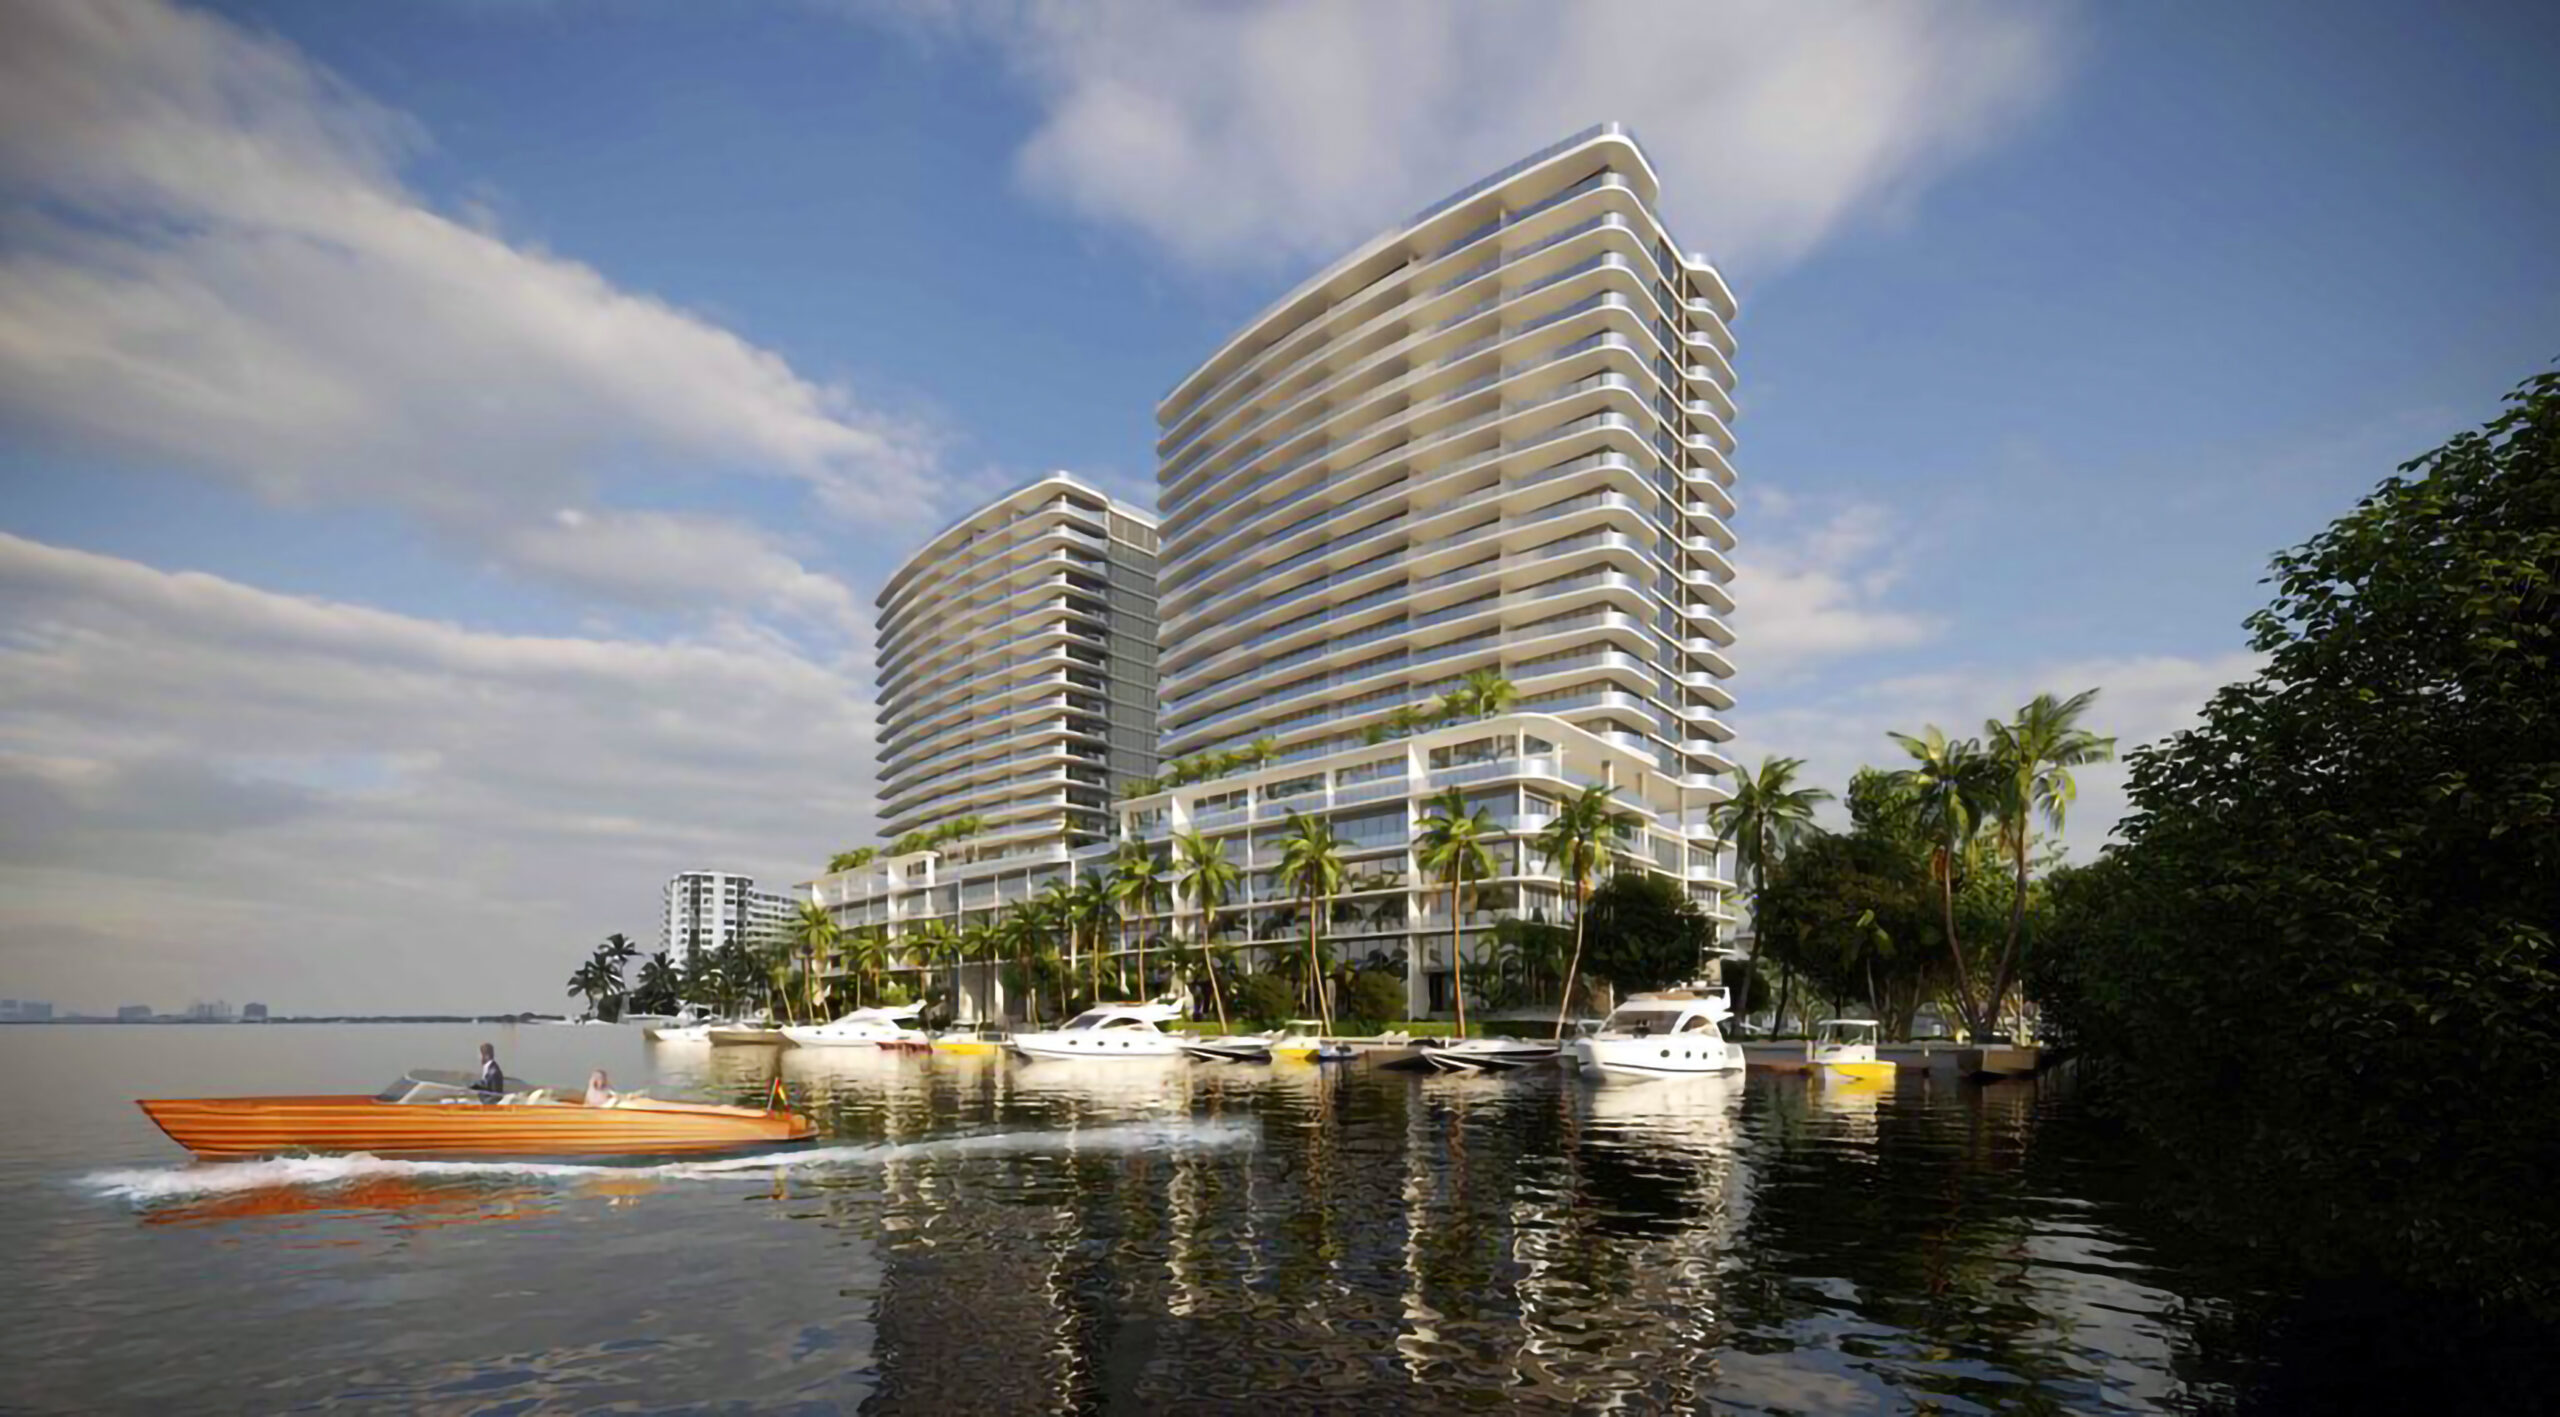 Continuum Reveals Proposal for 267-Unit Condominium Project in North Miami